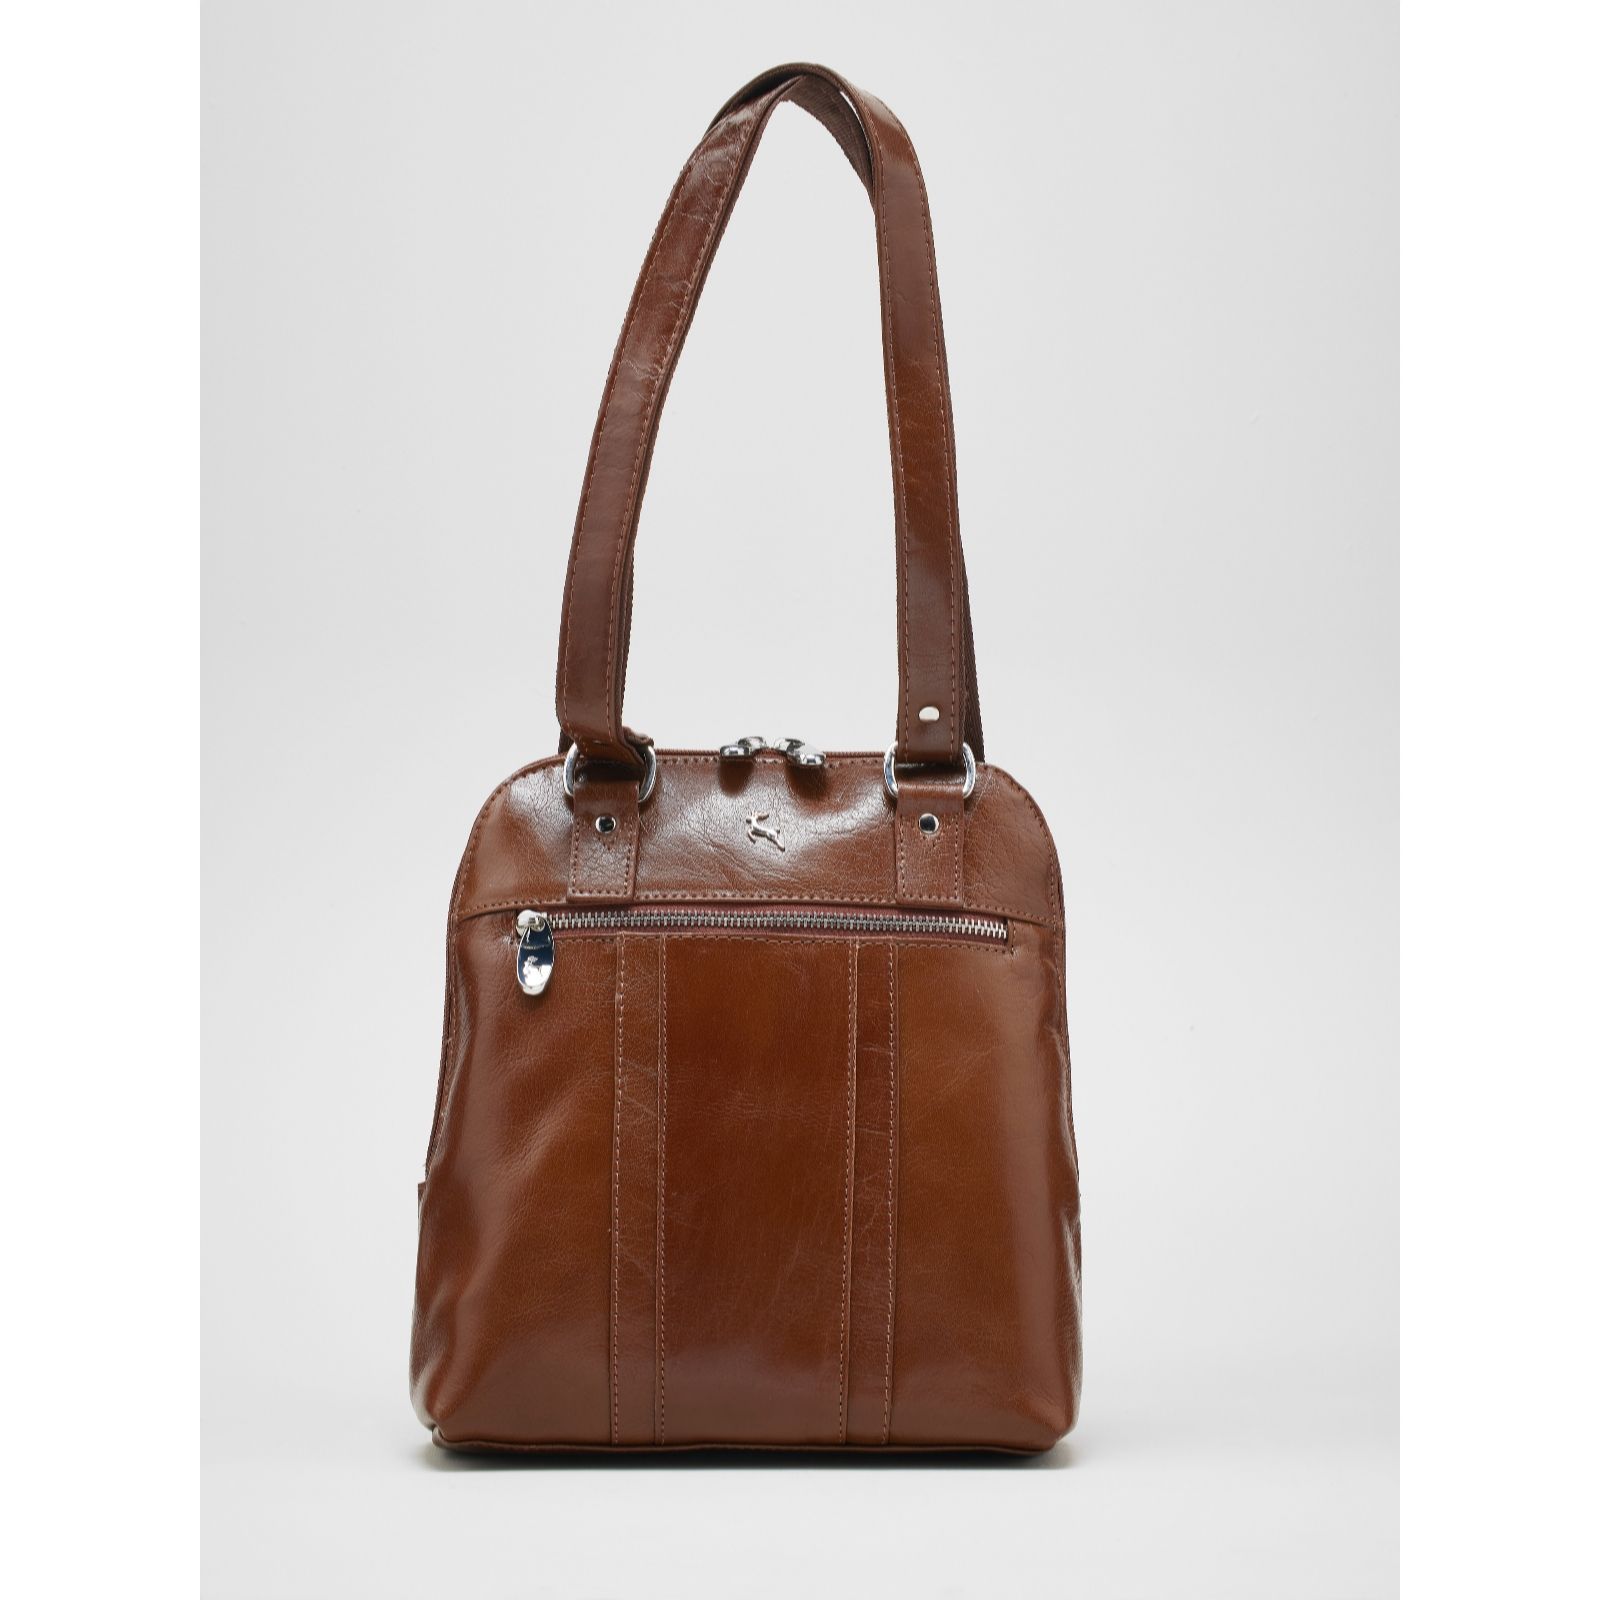 Ashwood leather bag purse with removable shoulder strap